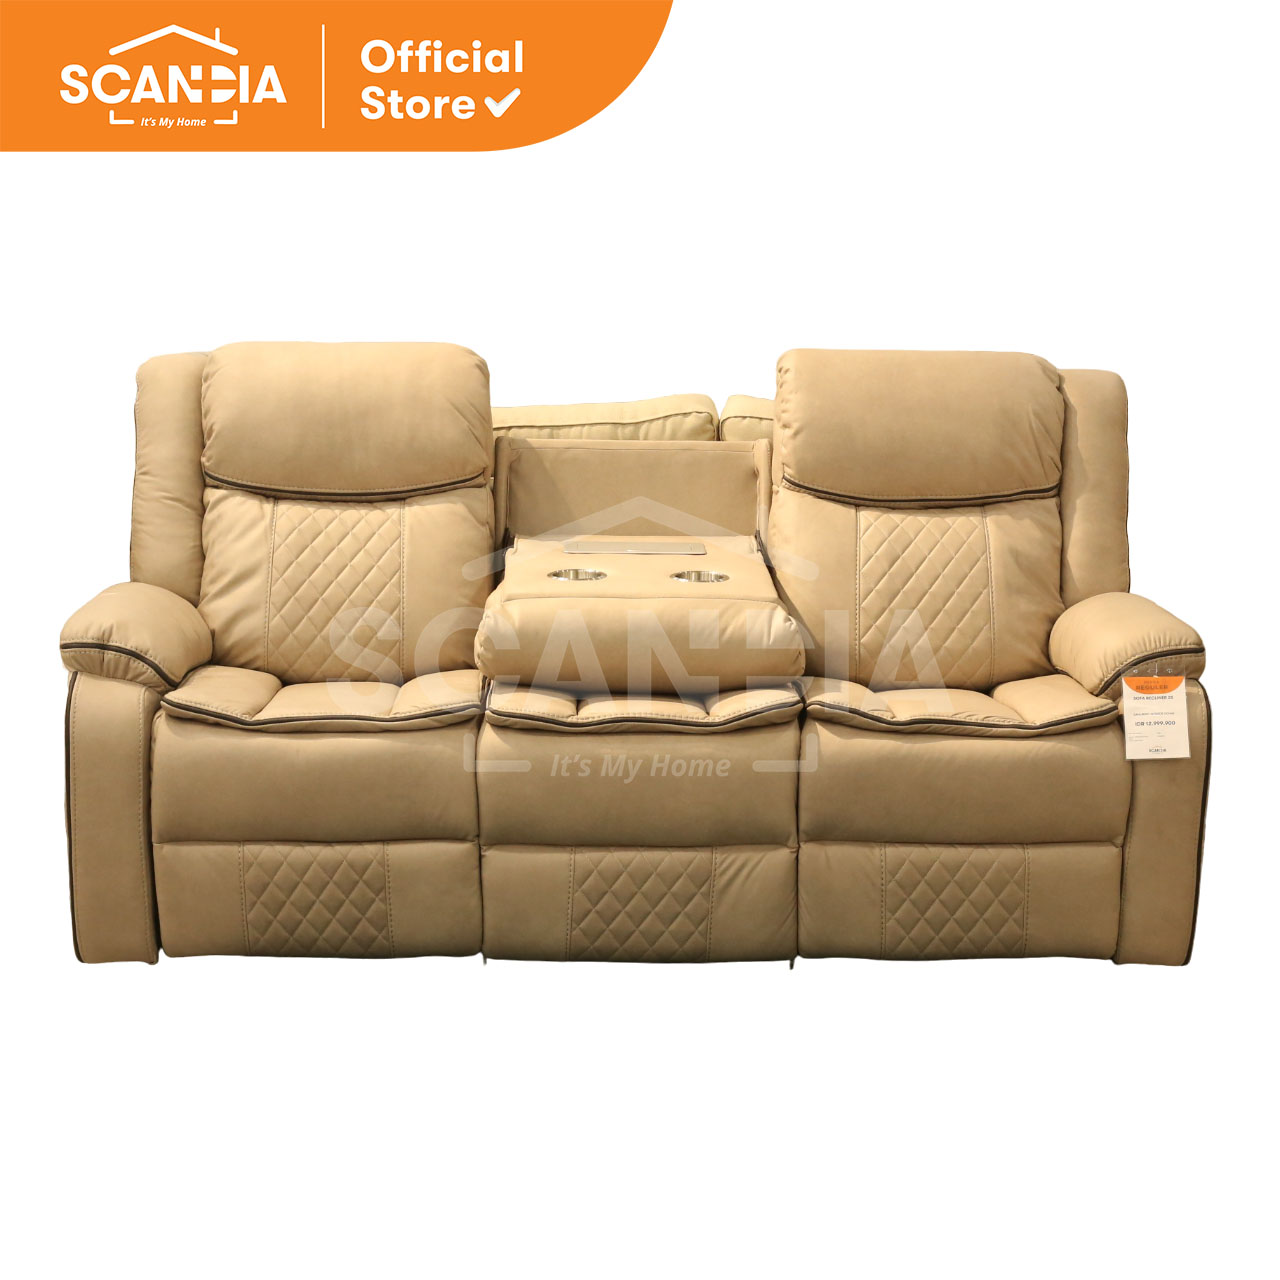 Promo Scandia Sofa Recliner 3 Seater